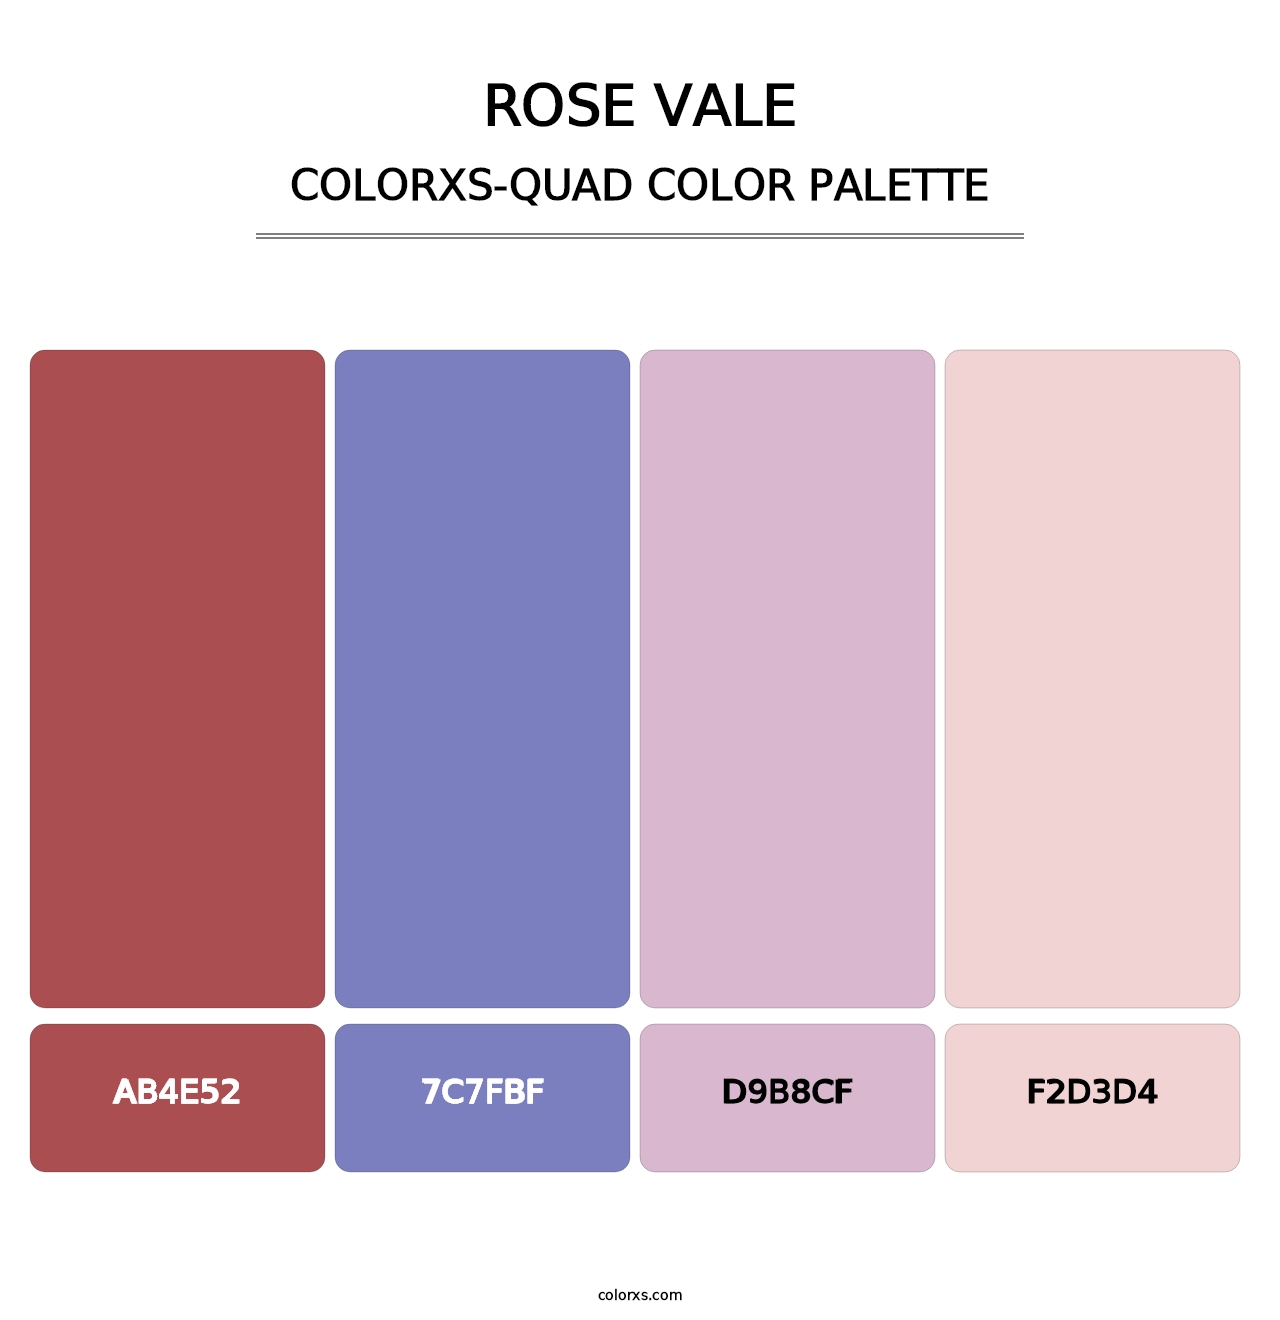 Rose Vale - Colorxs Quad Palette